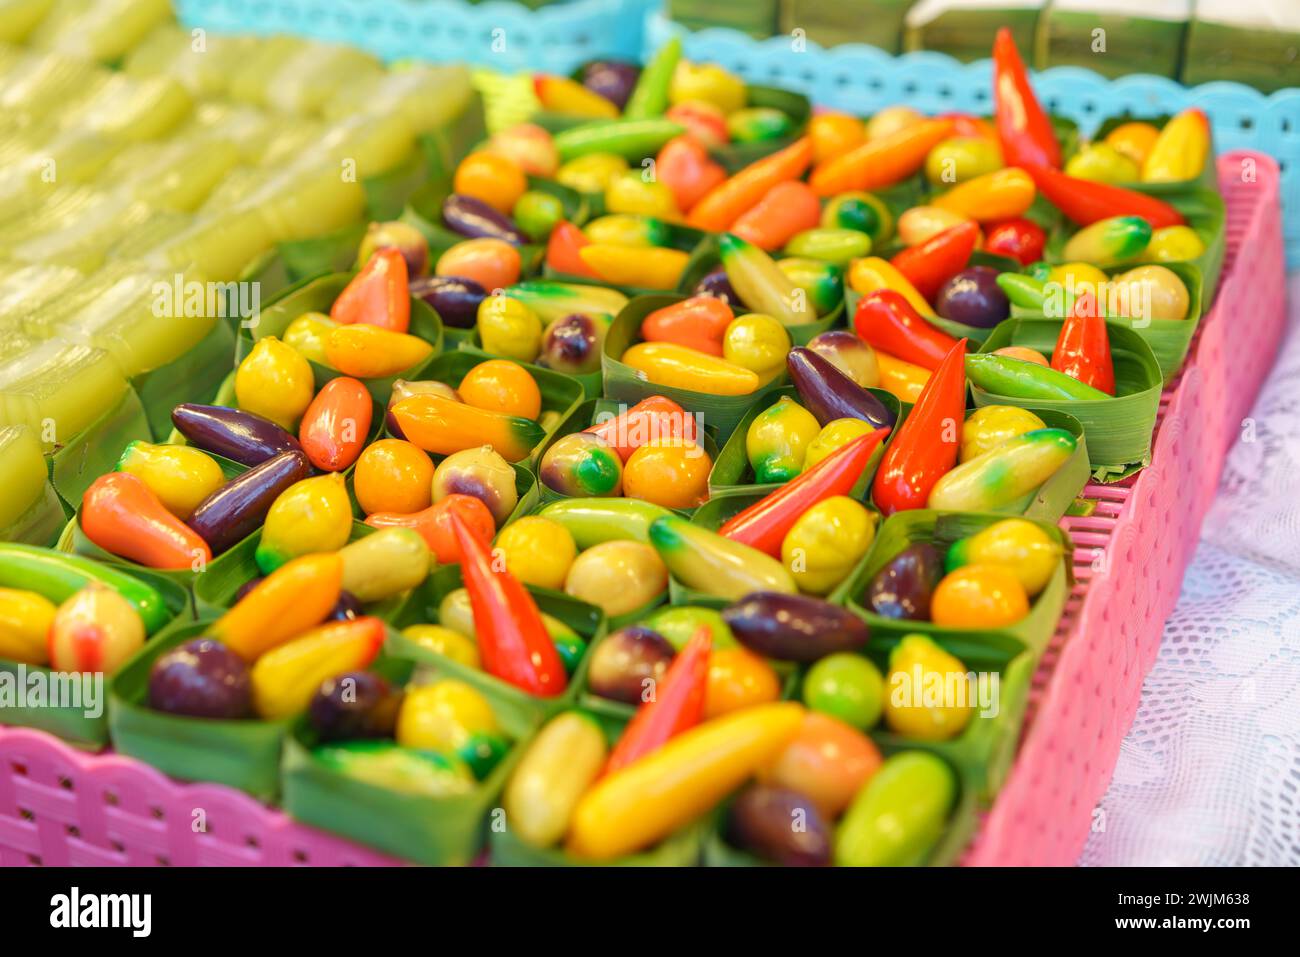 Un surtido de frutas en forma de frijoles Mung postres tailandeses vibrantes, diseñados para parecerse a frutas y verduras en miniatura, se muestran en recipientes transparentes en Foto de stock